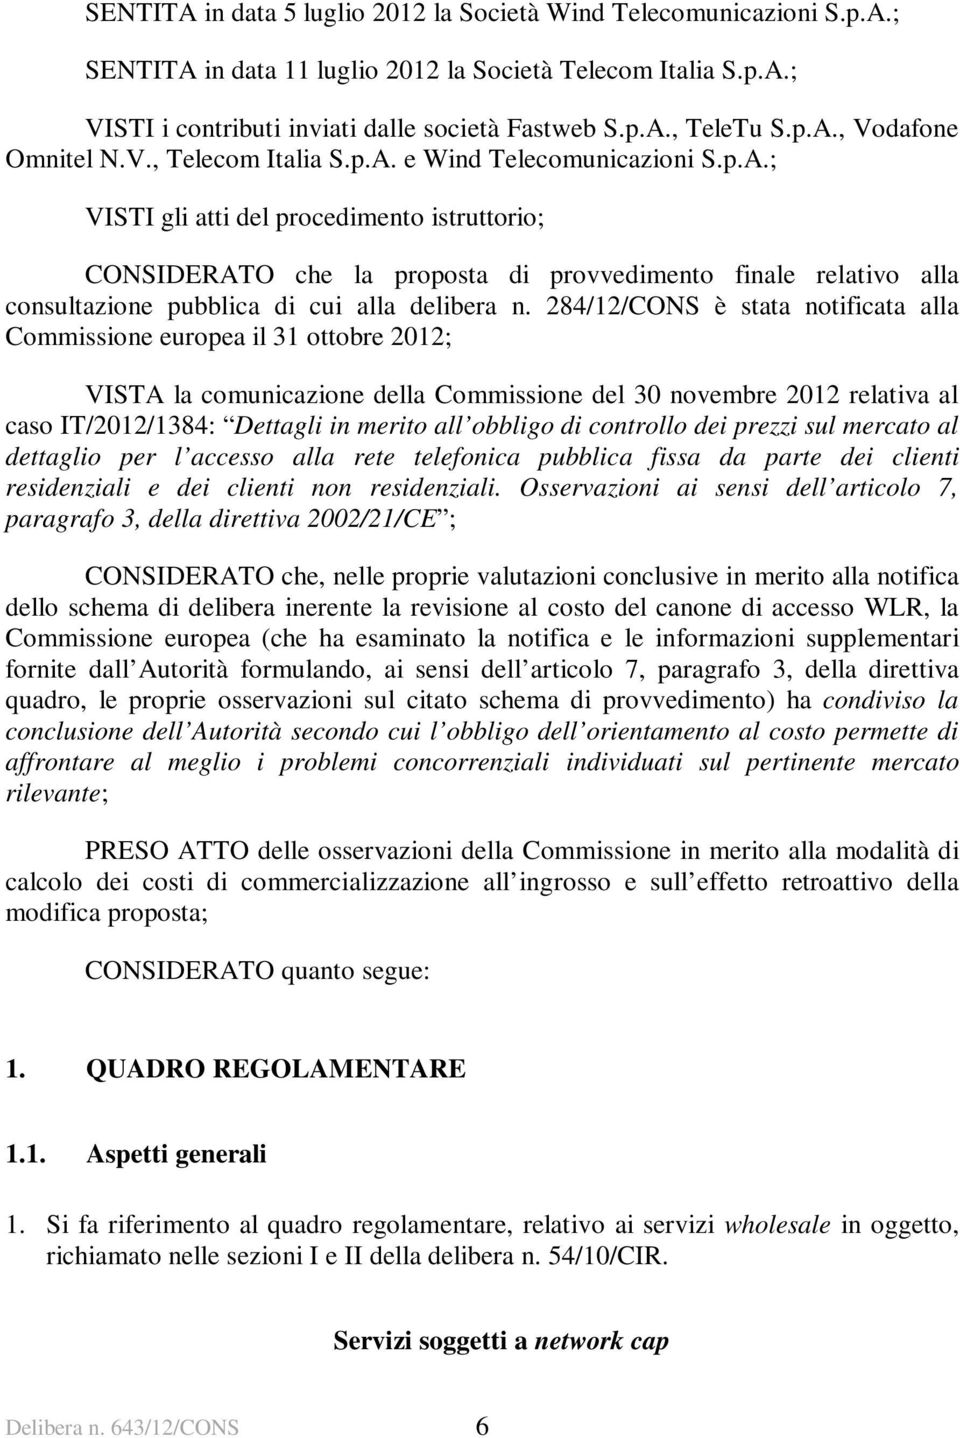 284/12/CONS è stata notificata alla Commissione europea il 31 ottobre 2012; VISTA la comunicazione della Commissione del 30 novembre 2012 relativa al caso IT/2012/1384: Dettagli in merito all obbligo